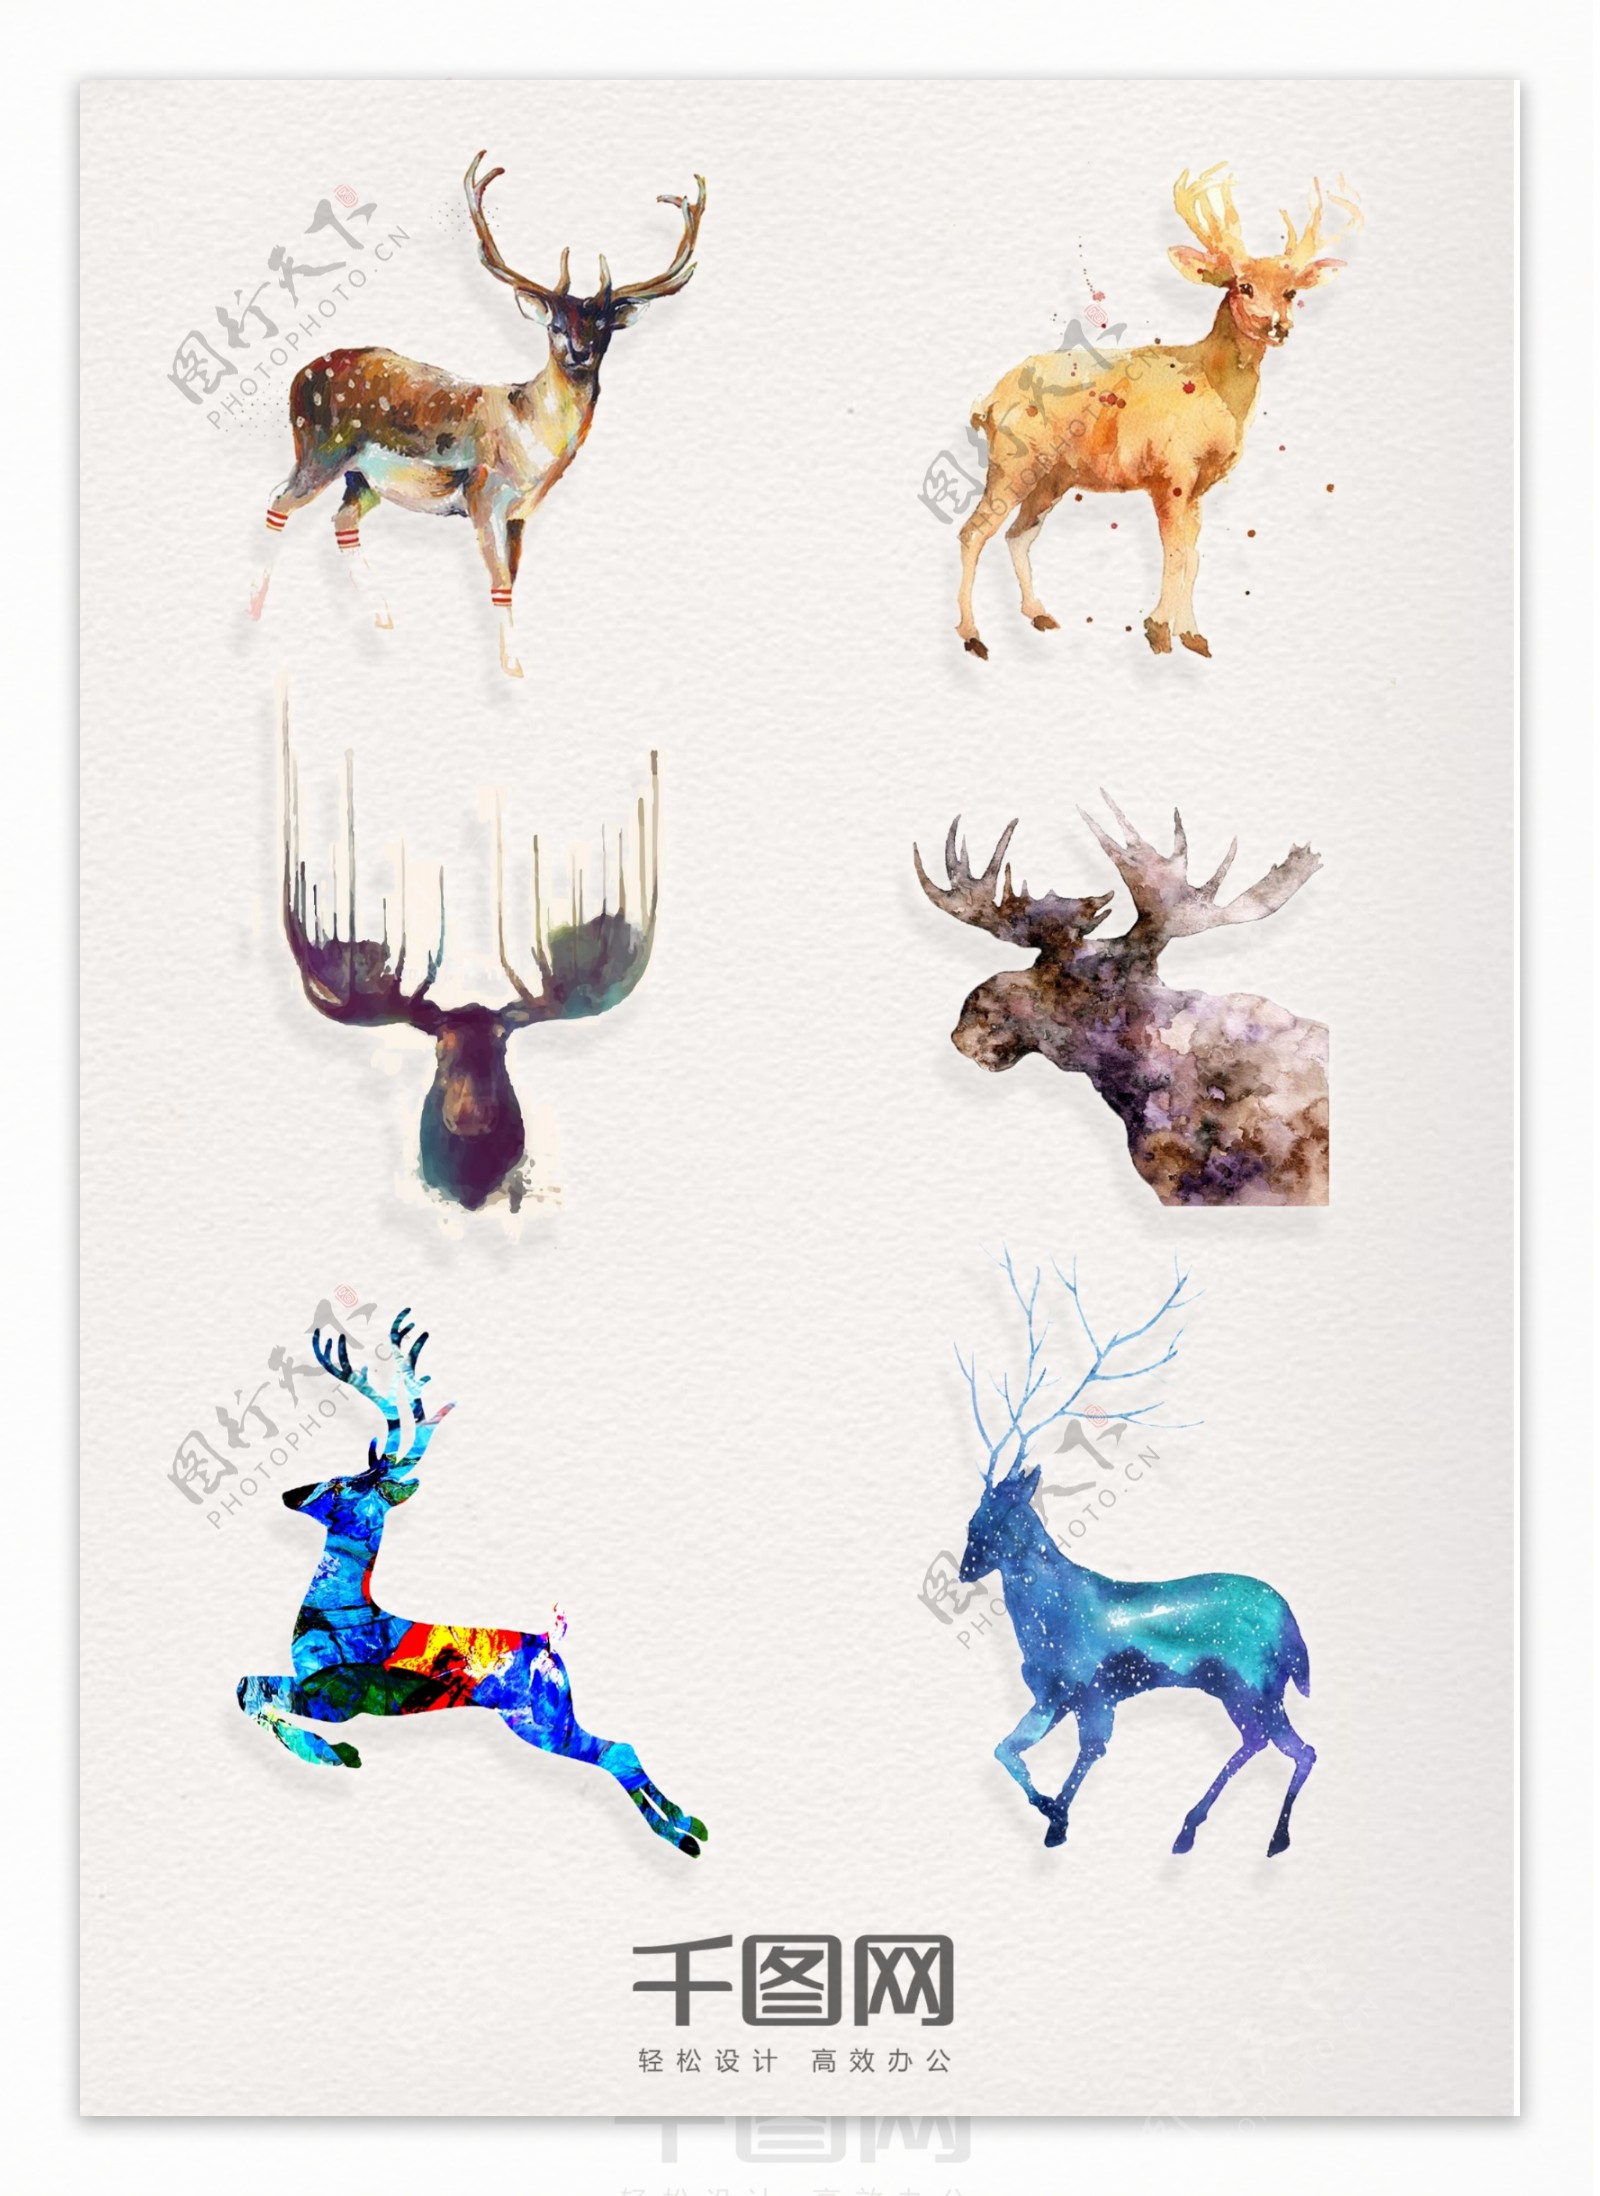 一组精美水彩动物鹿设计素材